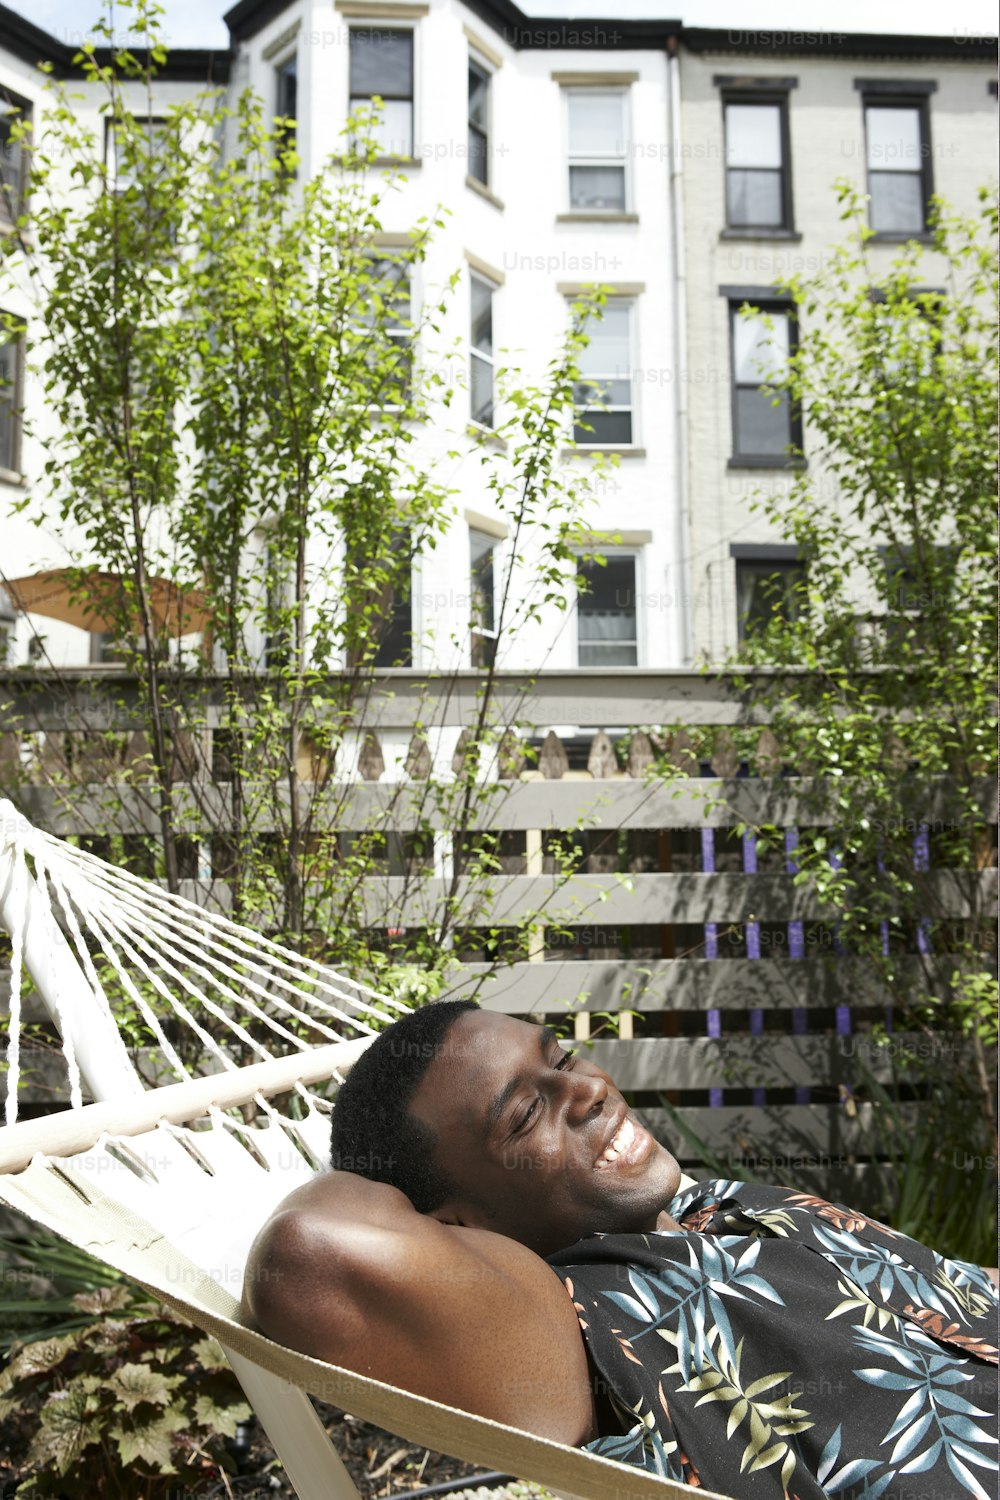 a man laying in a hammock in a yard